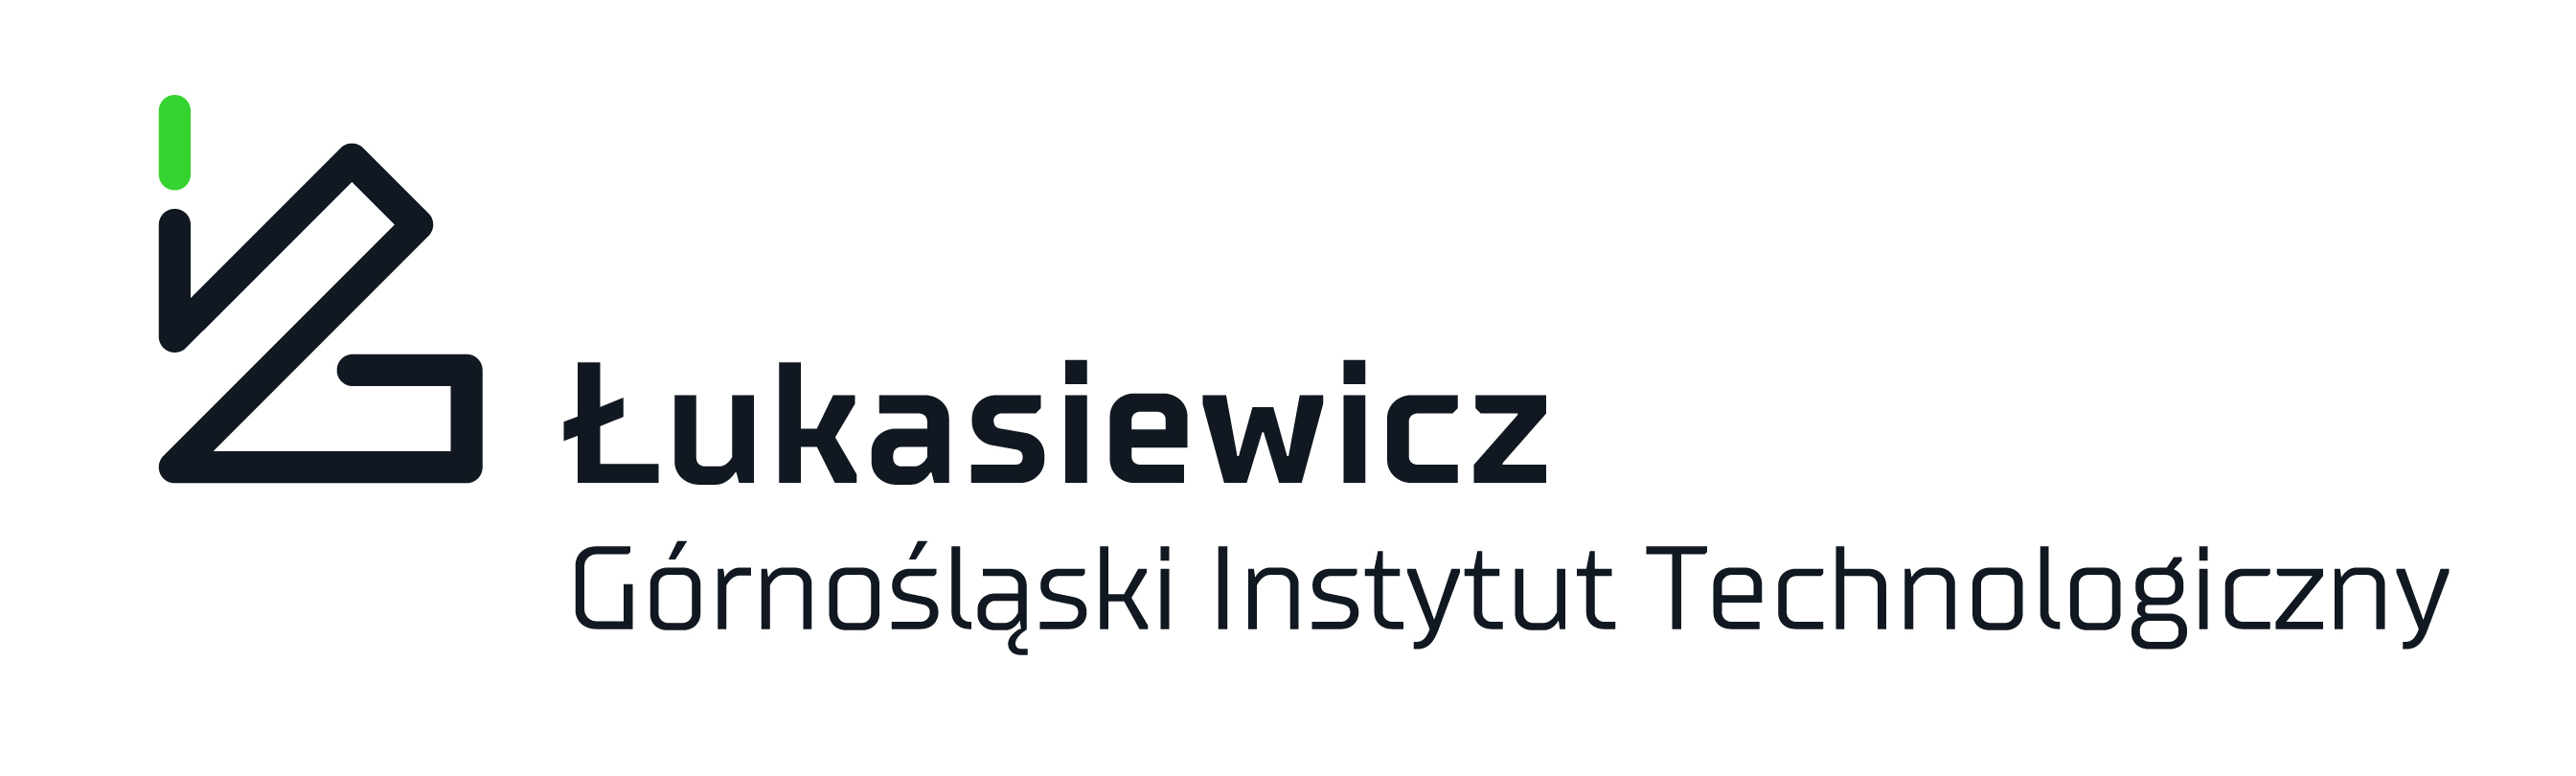 Sieć Badawcza Łukasiewicz – Górnośląski Instytut Technologiczny